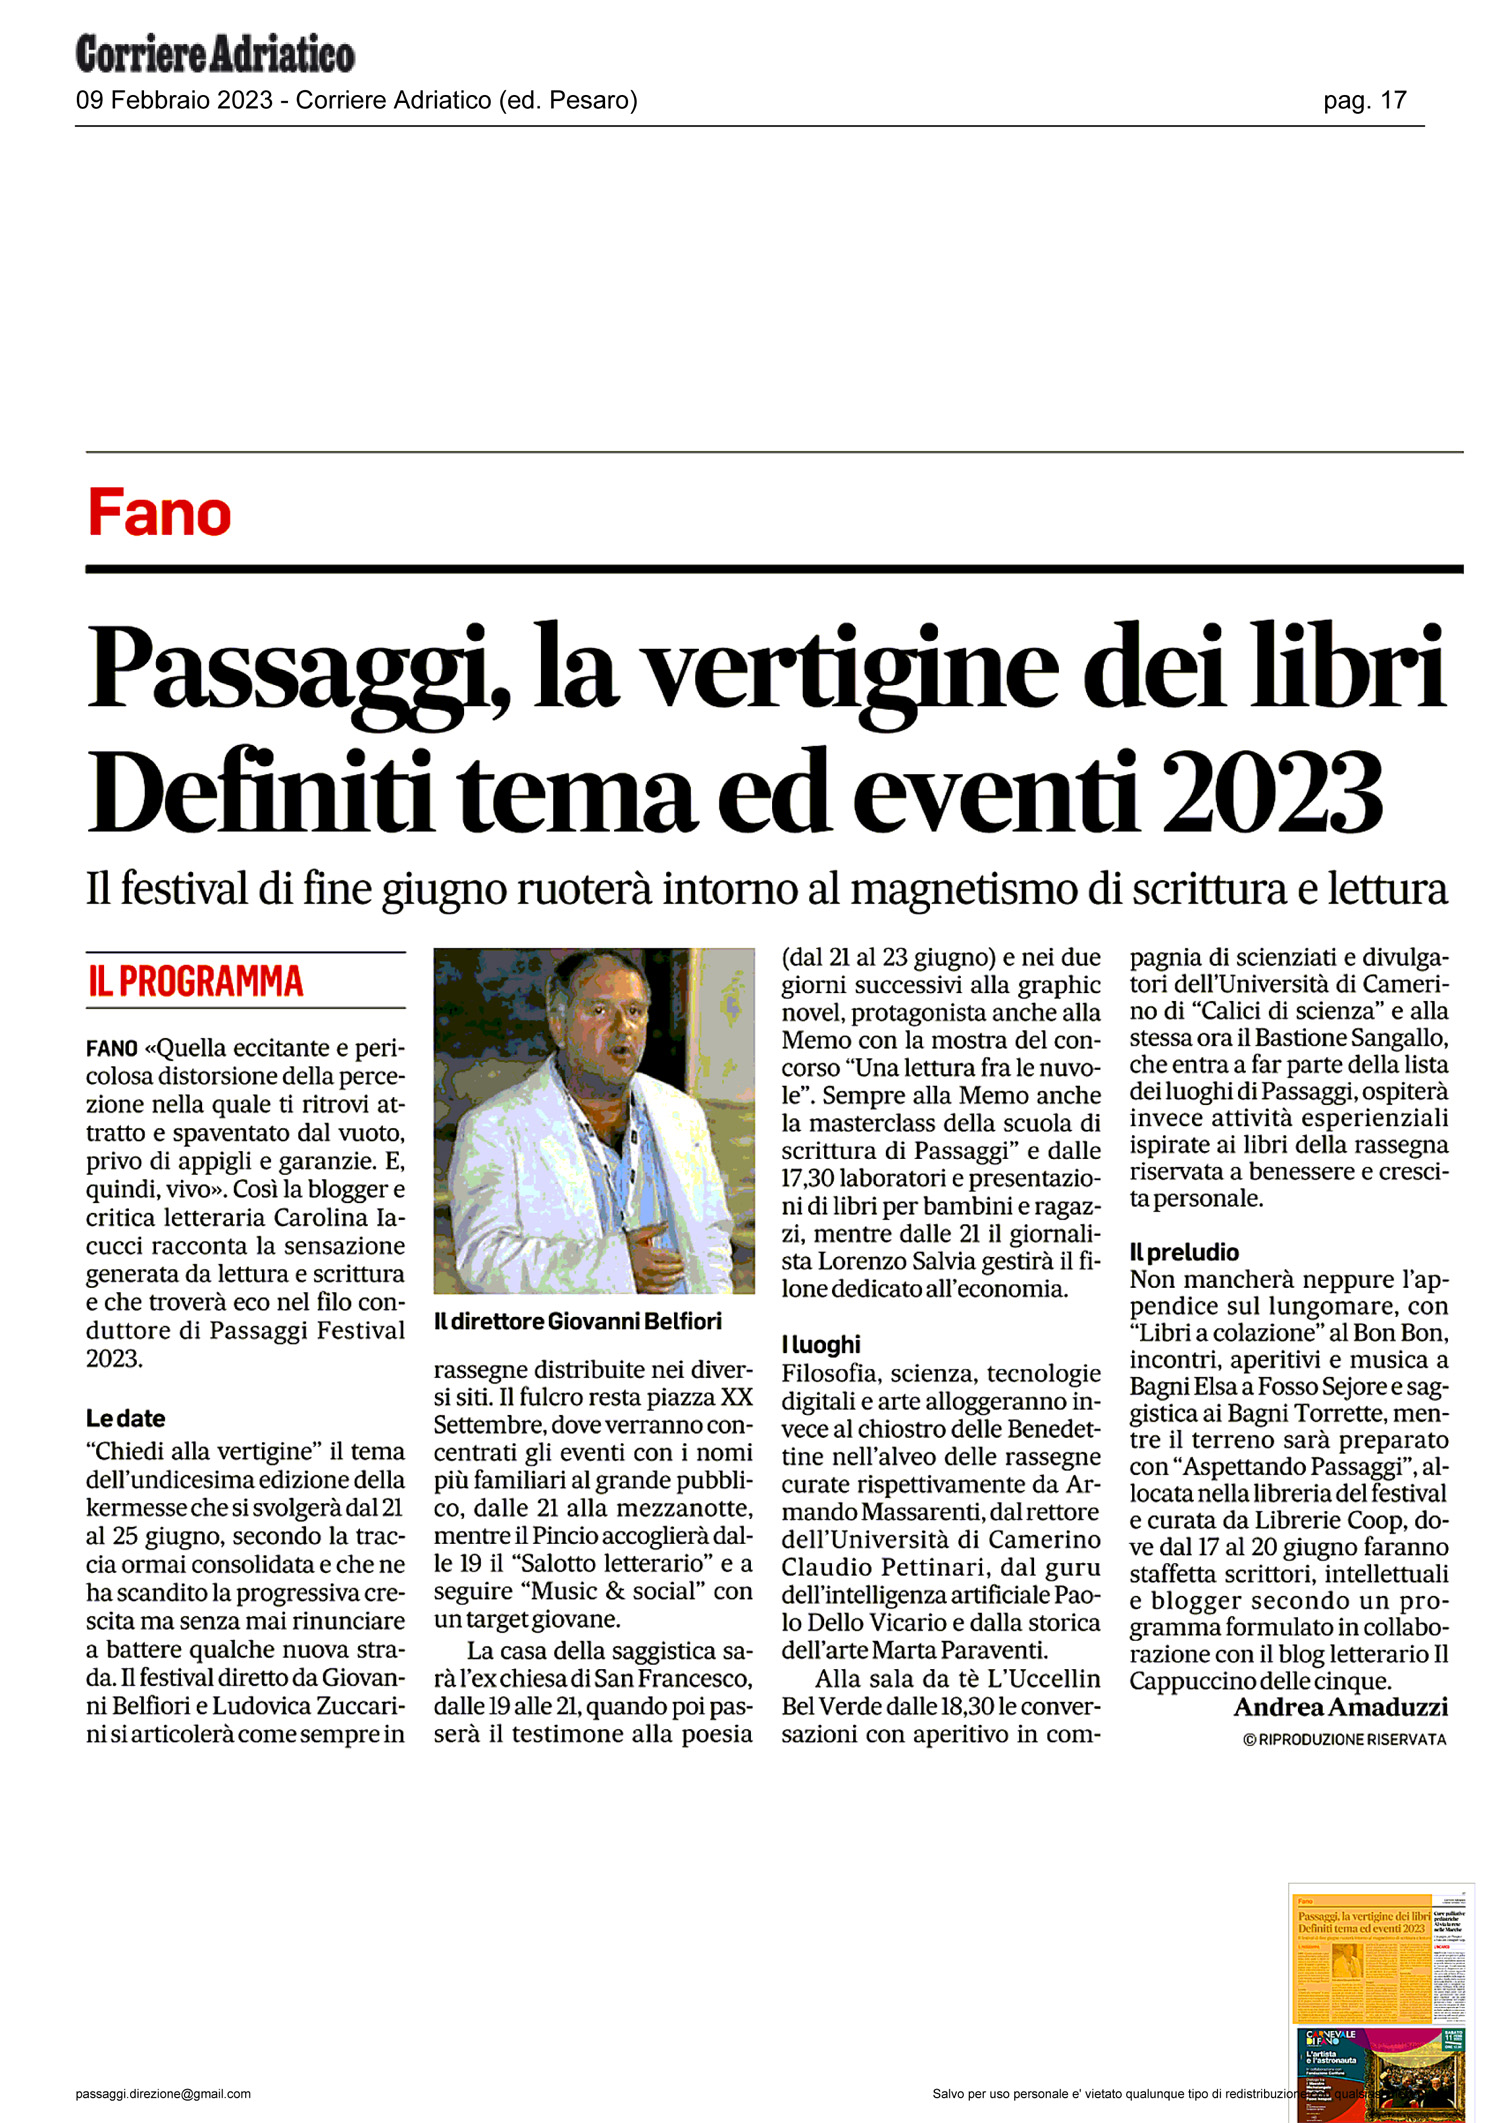 Corriere_Adriatico_passaggi_la_vertigine_dei_libri_definiti_tema_ed_eventi_2023